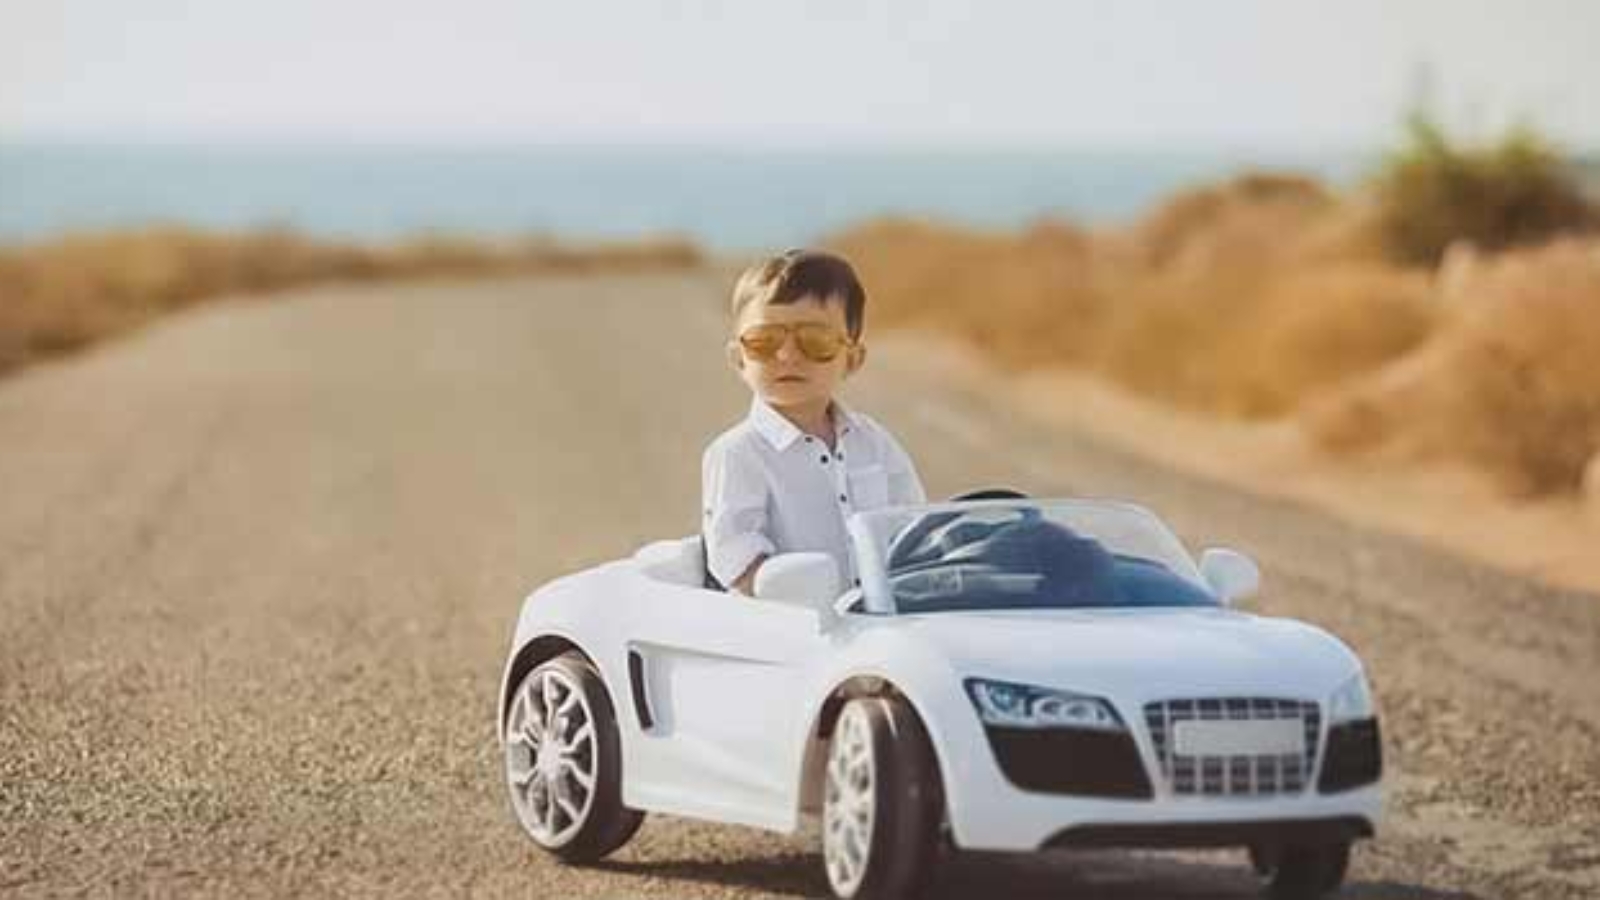 لیست بهترین ماشین شارژی برای کودکان